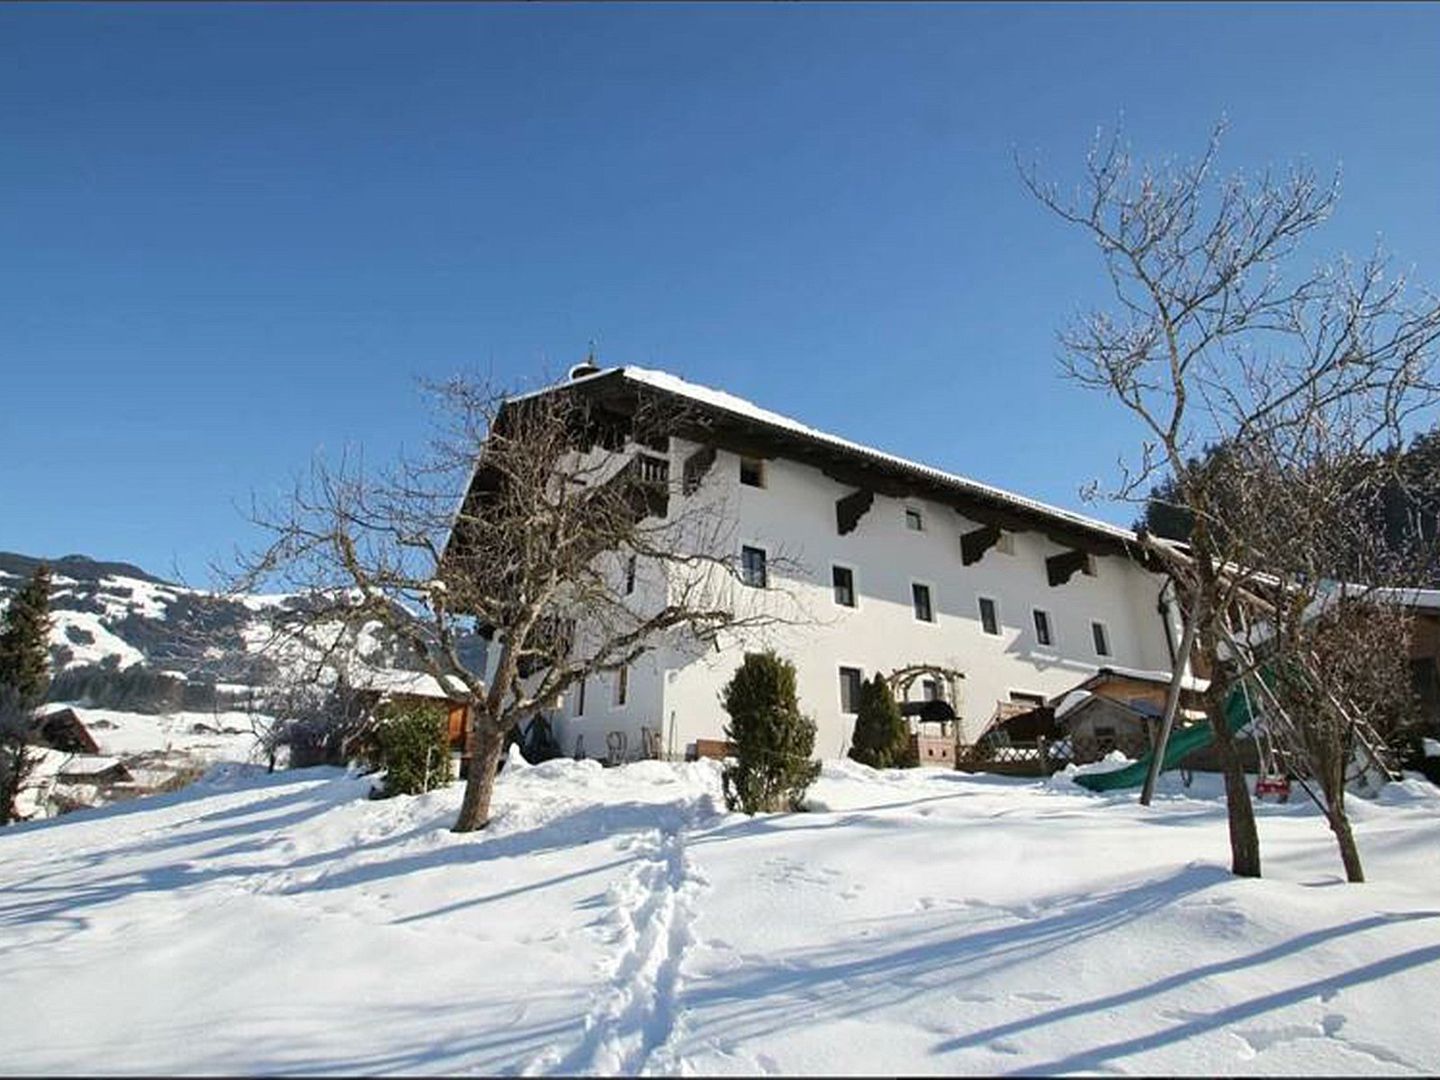 Meer info over Unterrainhof  bij Wintertrex